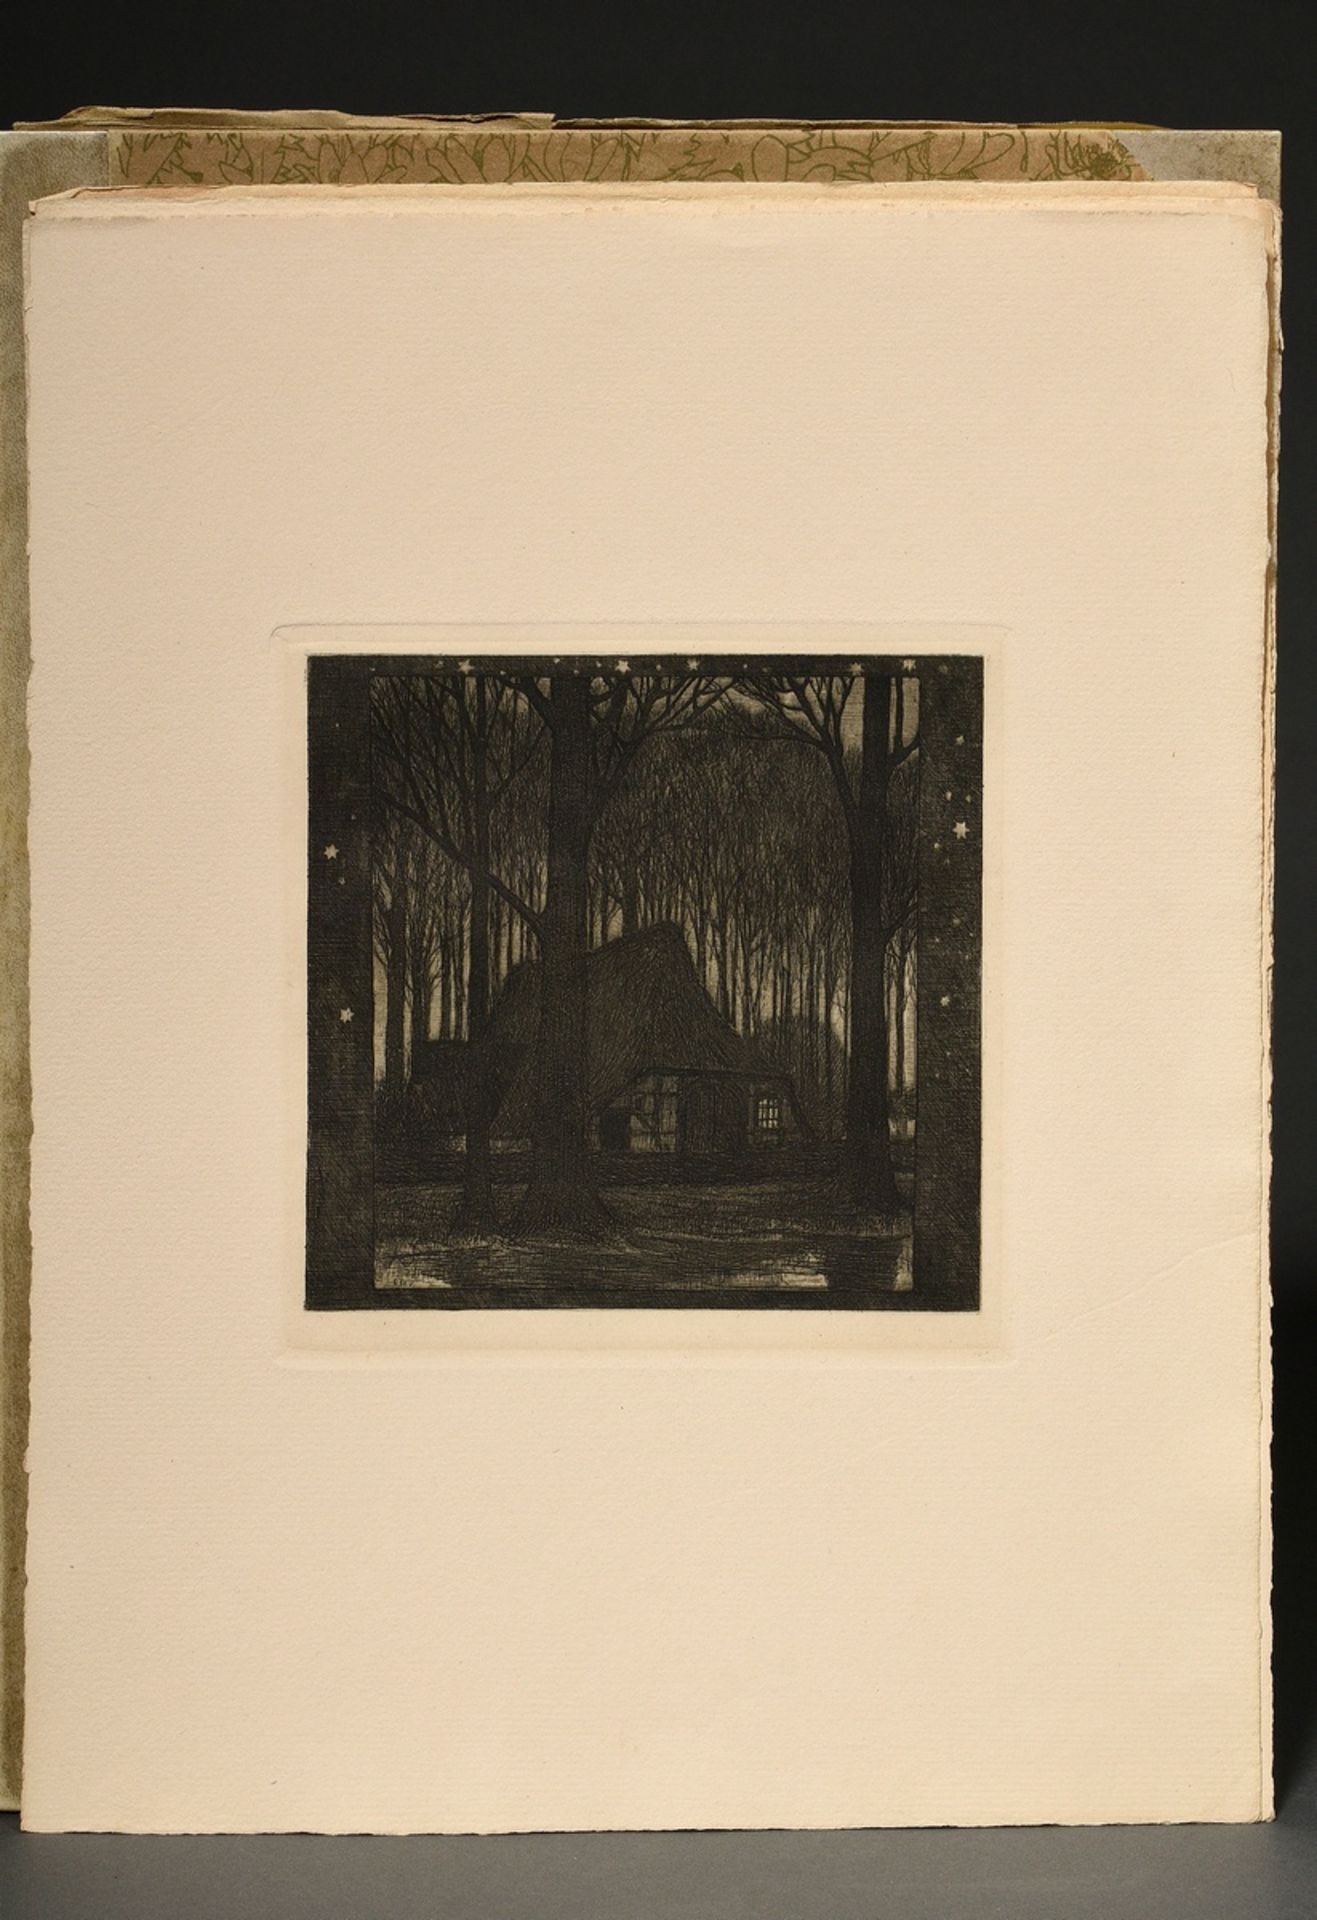 Vogeler, Heinrich (1872-1942) "An den Frühling" 1899/1901, portfolio with 10 etchings and prelimina - Image 8 of 25